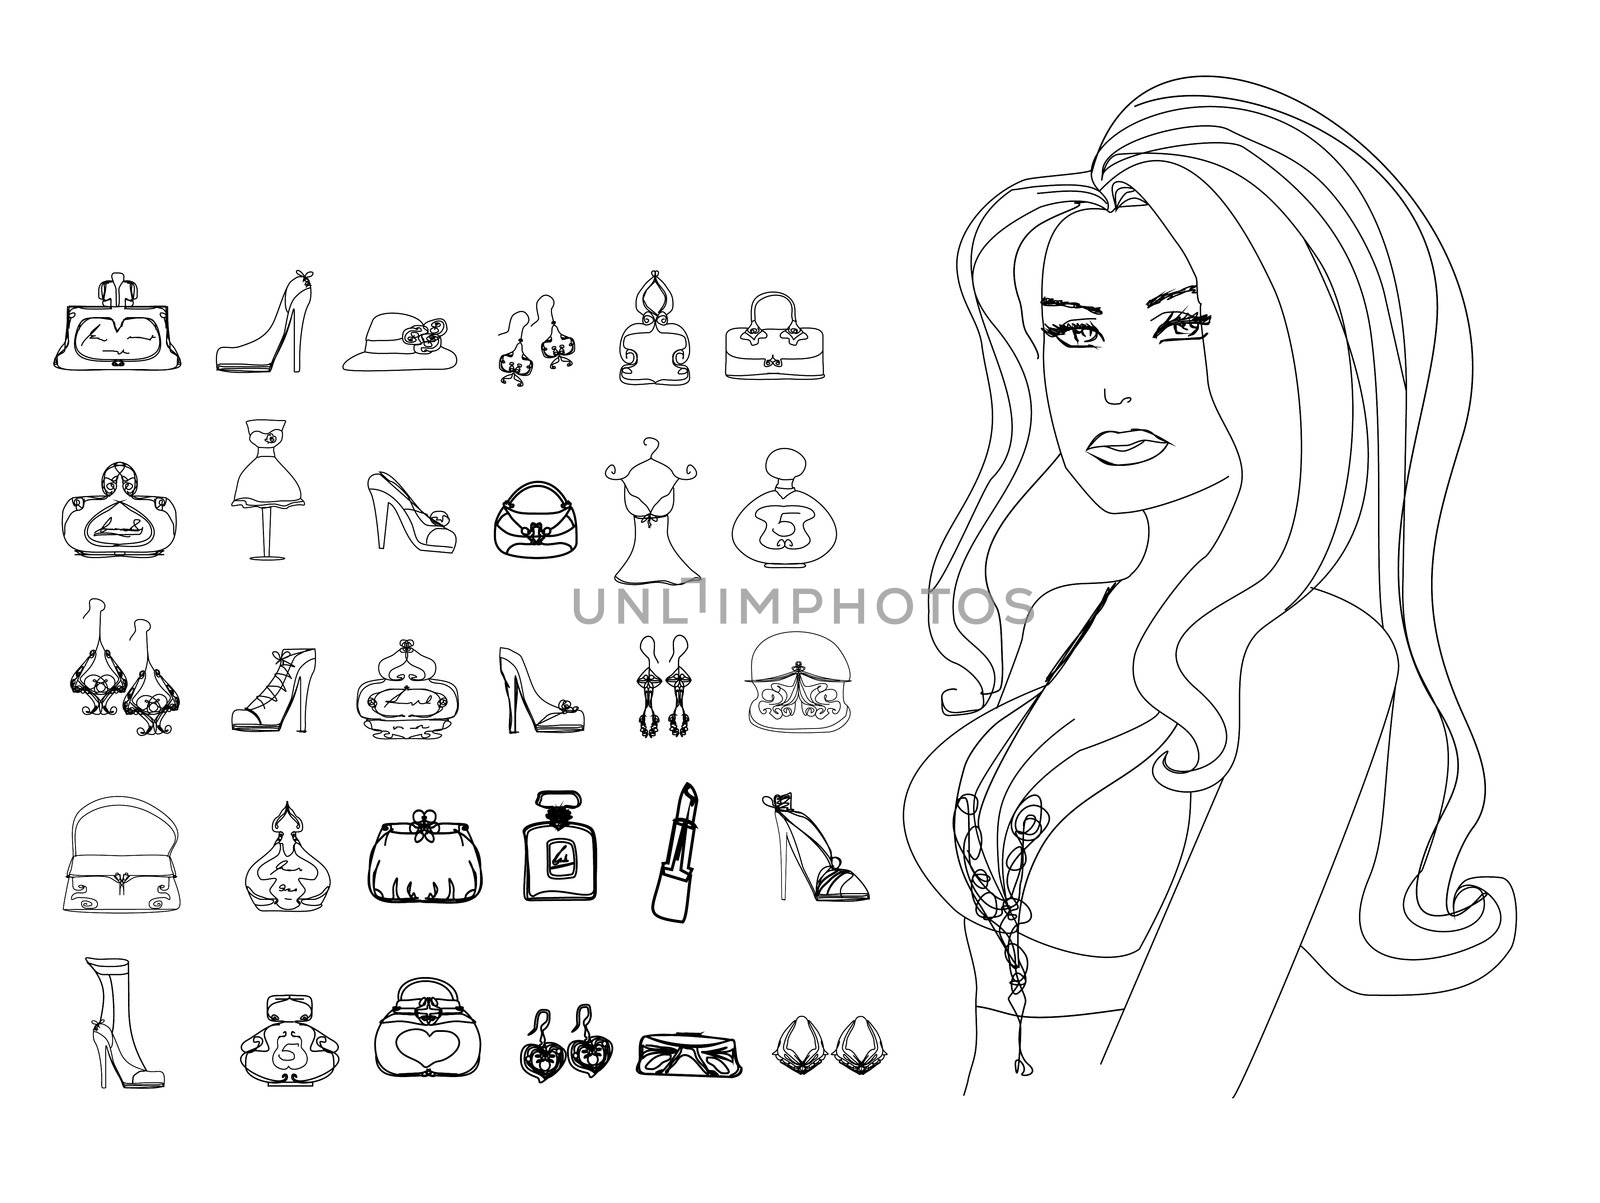 Fashion shopping icon doodle set